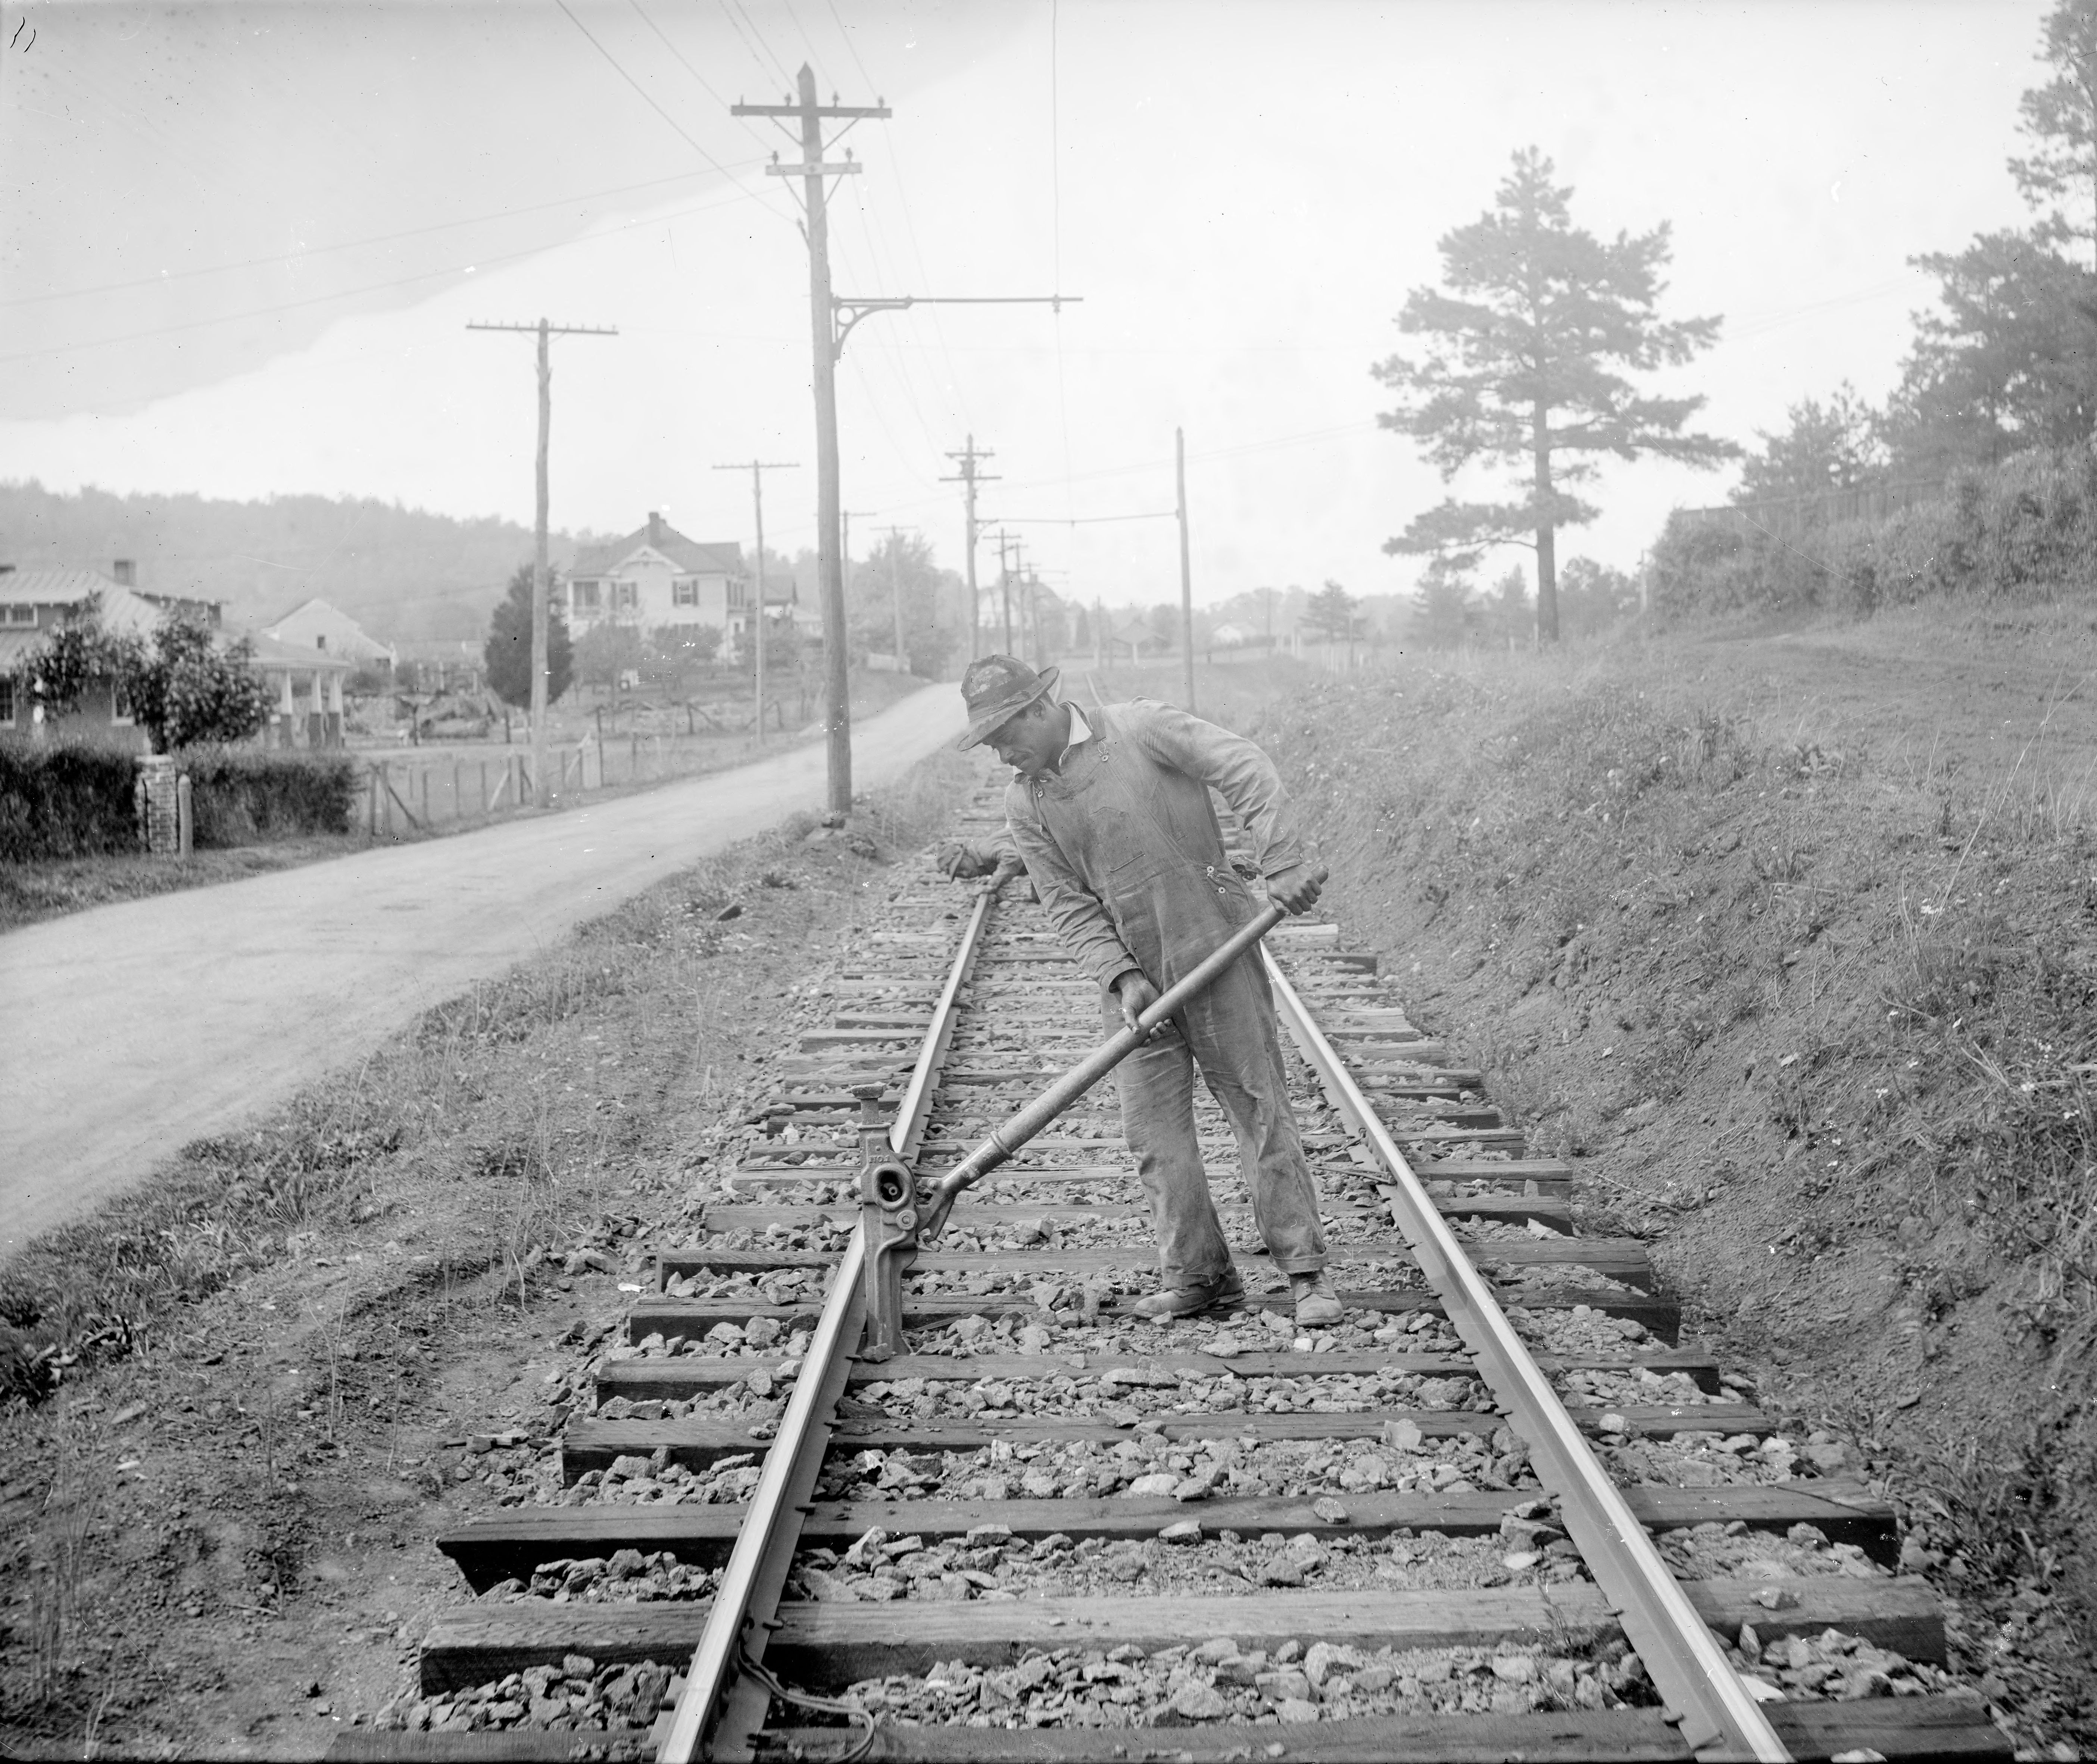 Charlottesville and Albemarle Railway Company Machine